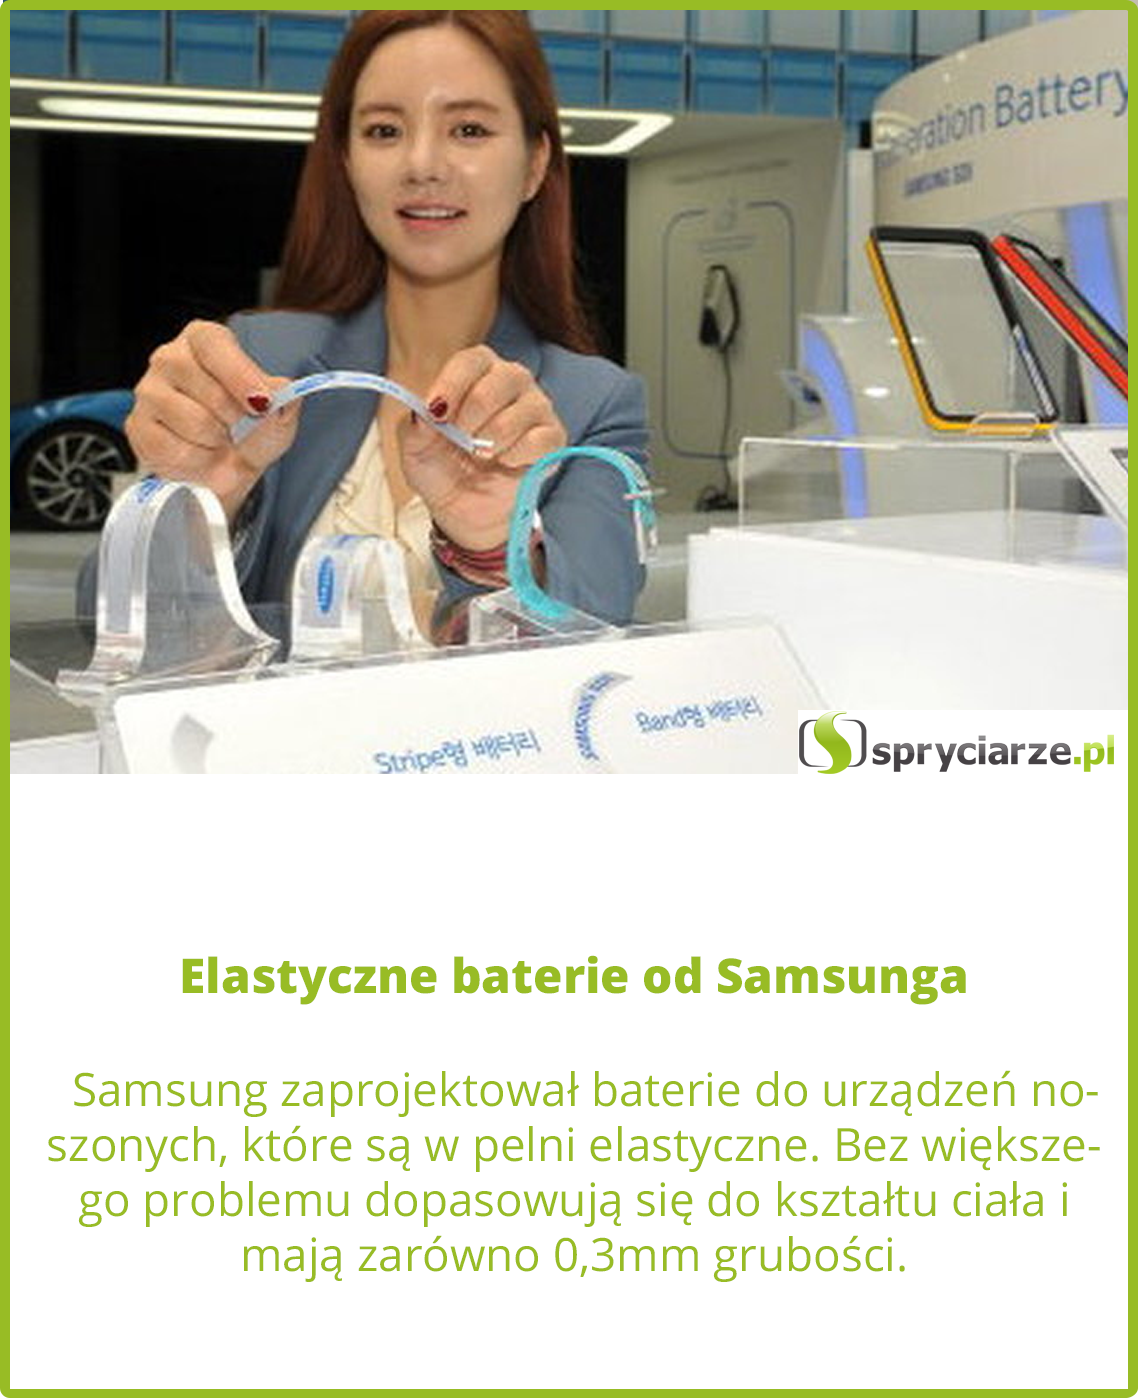 Elastyczne baterie od Samsunga